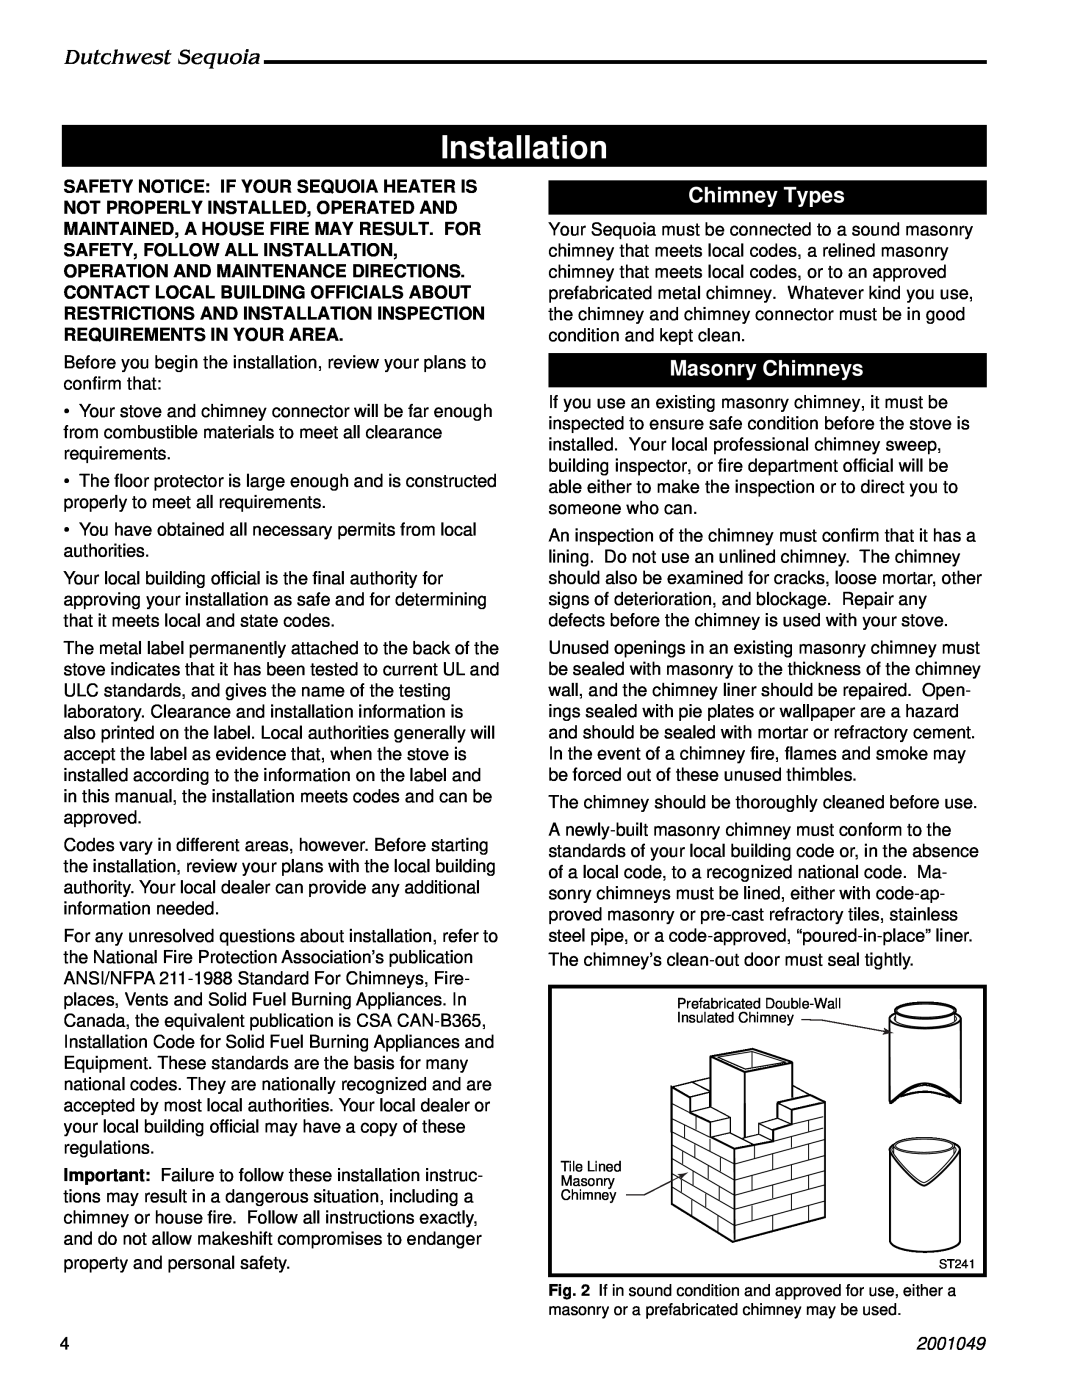 Vermont Casting 2160 manual Installation, Chimney Types, Masonry Chimneys, Dutchwest Sequoia, 2001049 